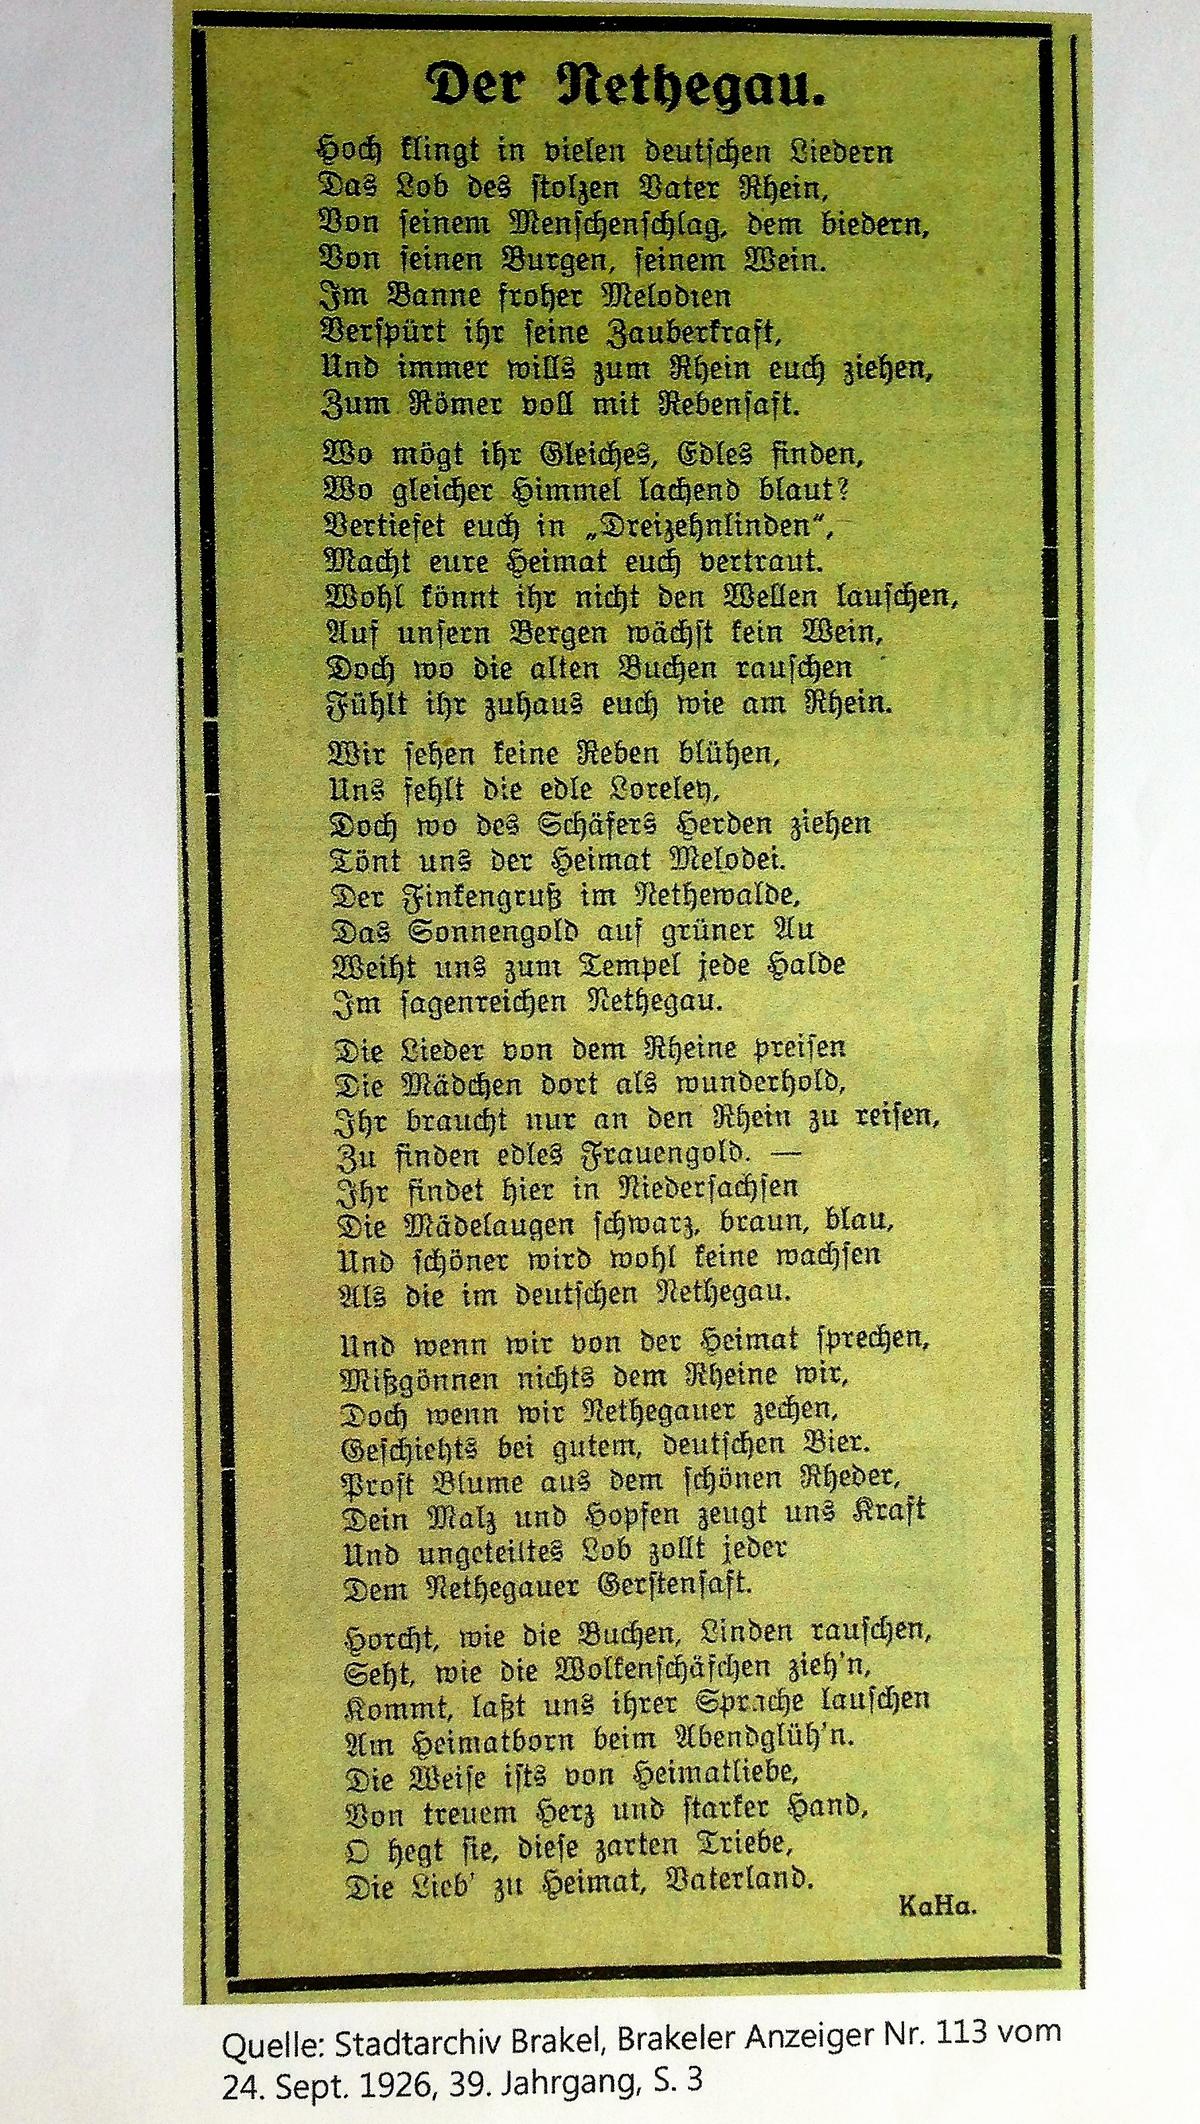 gedicht nethegau 1926